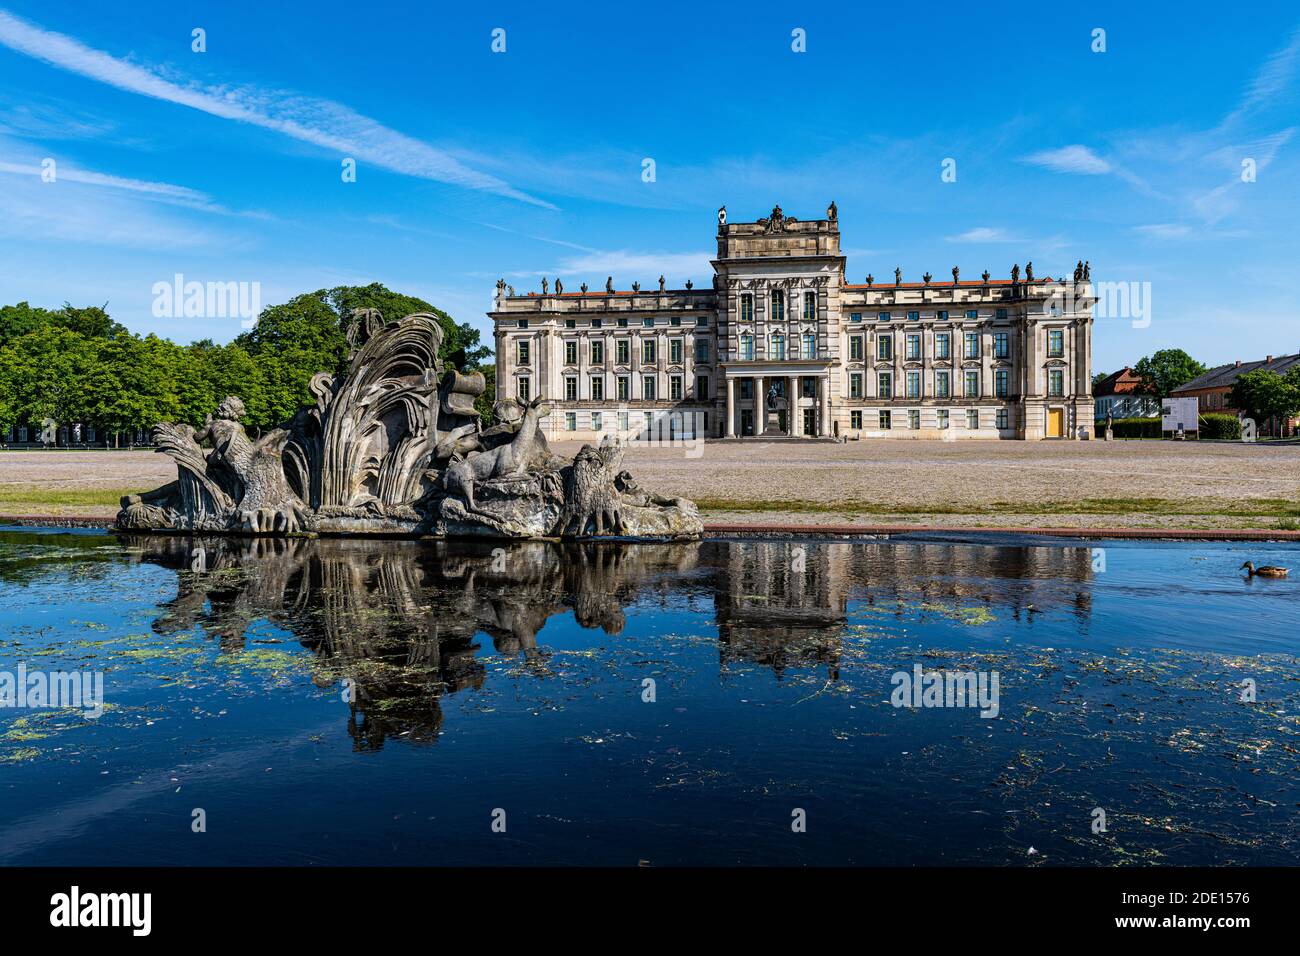 Ludwigslust Palace, Ludwigslust, Mecklenburg-Vorpommern, Germany, Europe Stock Photo